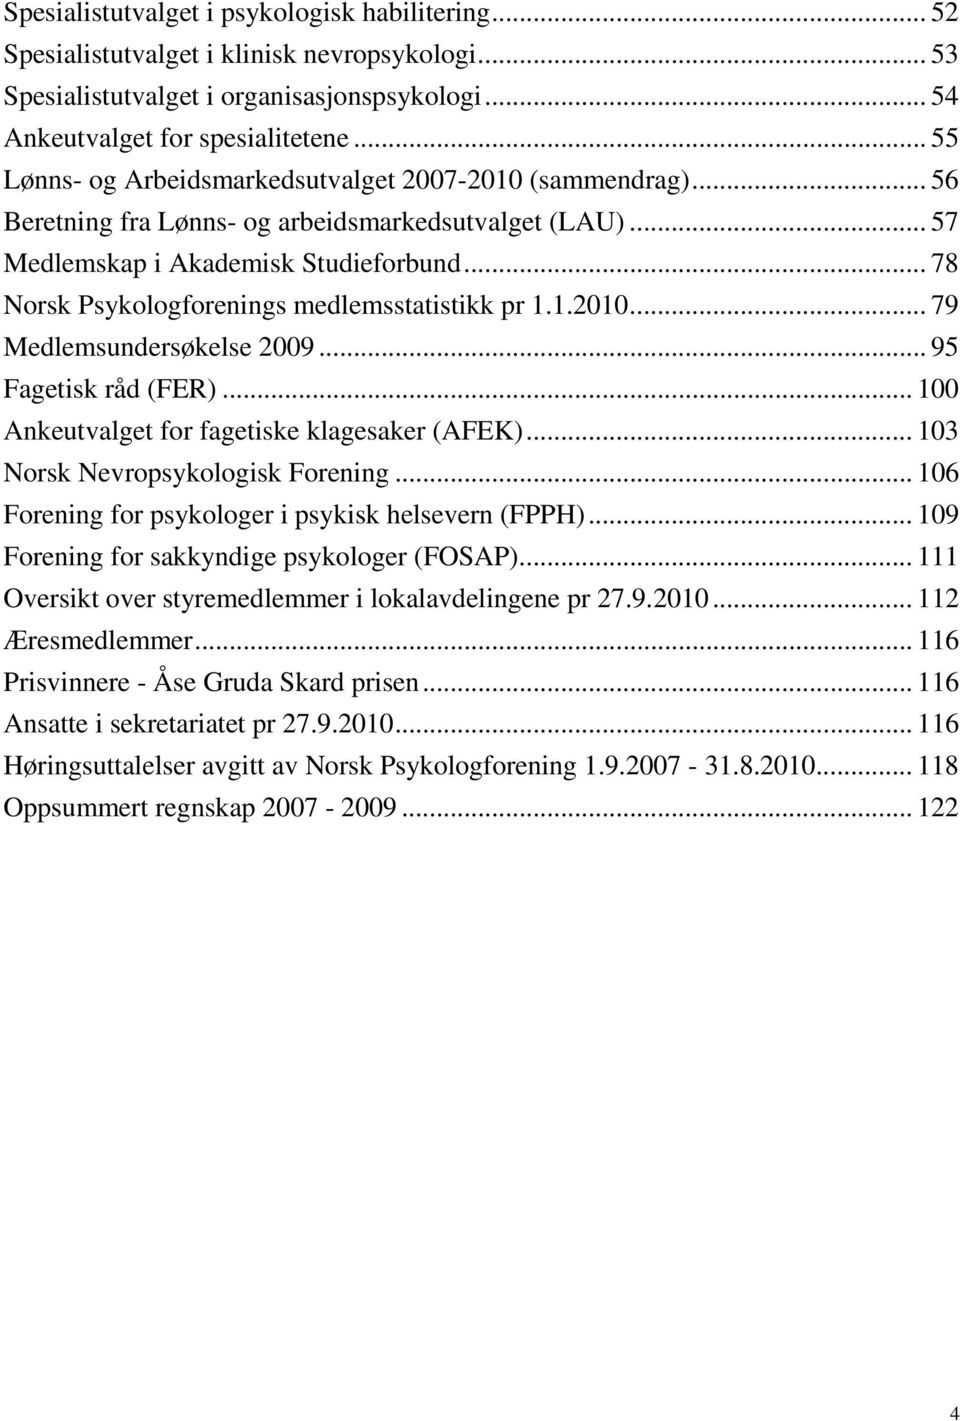 .. 78 Norsk Psykologforenings medlemsstatistikk pr 1.1.2010... 79 Medlemsundersøkelse 2009... 95 Fagetisk råd (FER)... 100 Ankeutvalget for fagetiske klagesaker (AFEK).